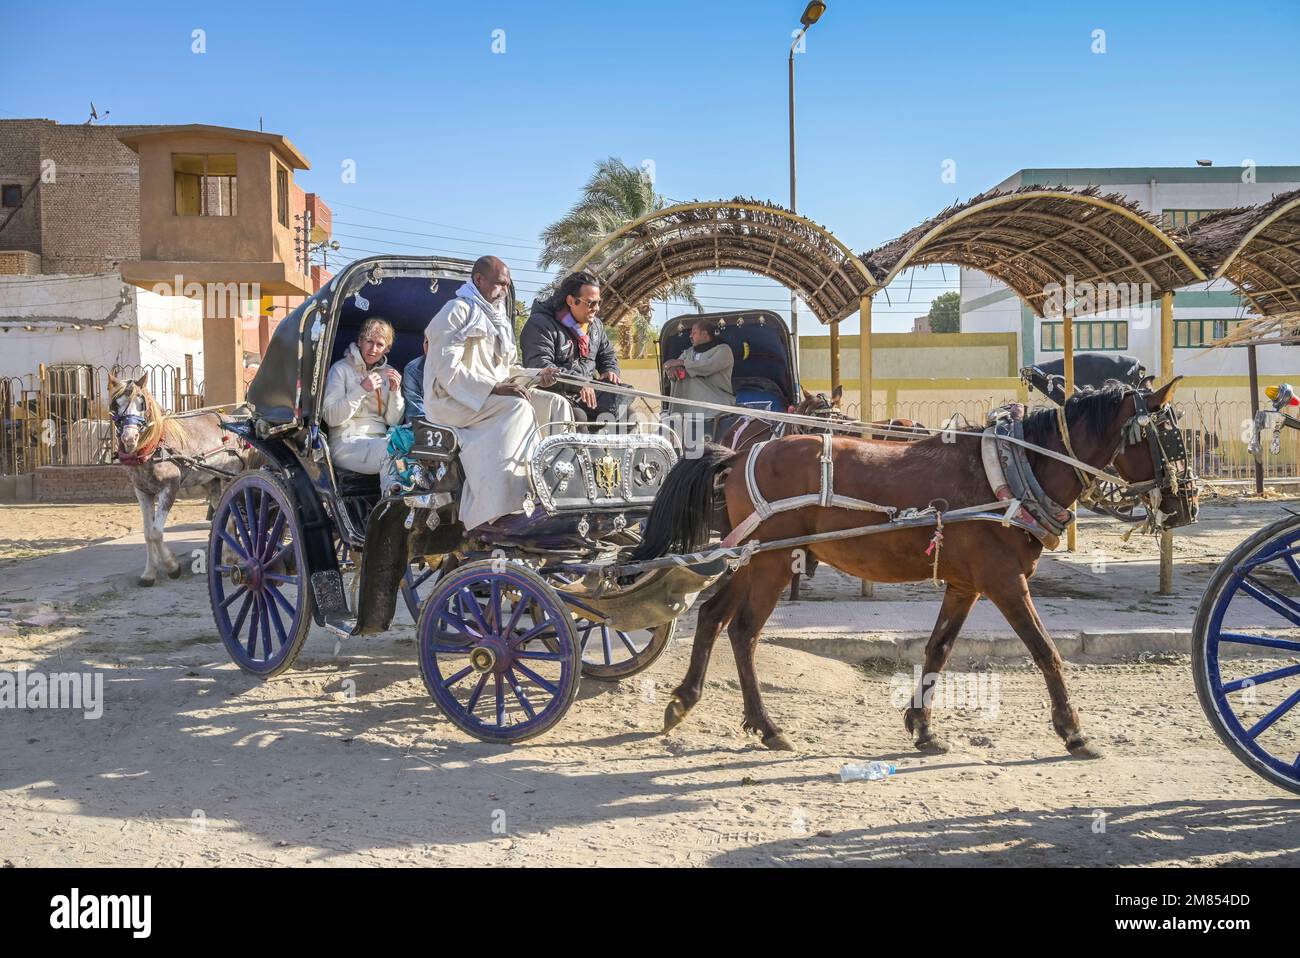 Pferdekutschen für Touristen am Tempel Edfu, Ägypten Stock Photo